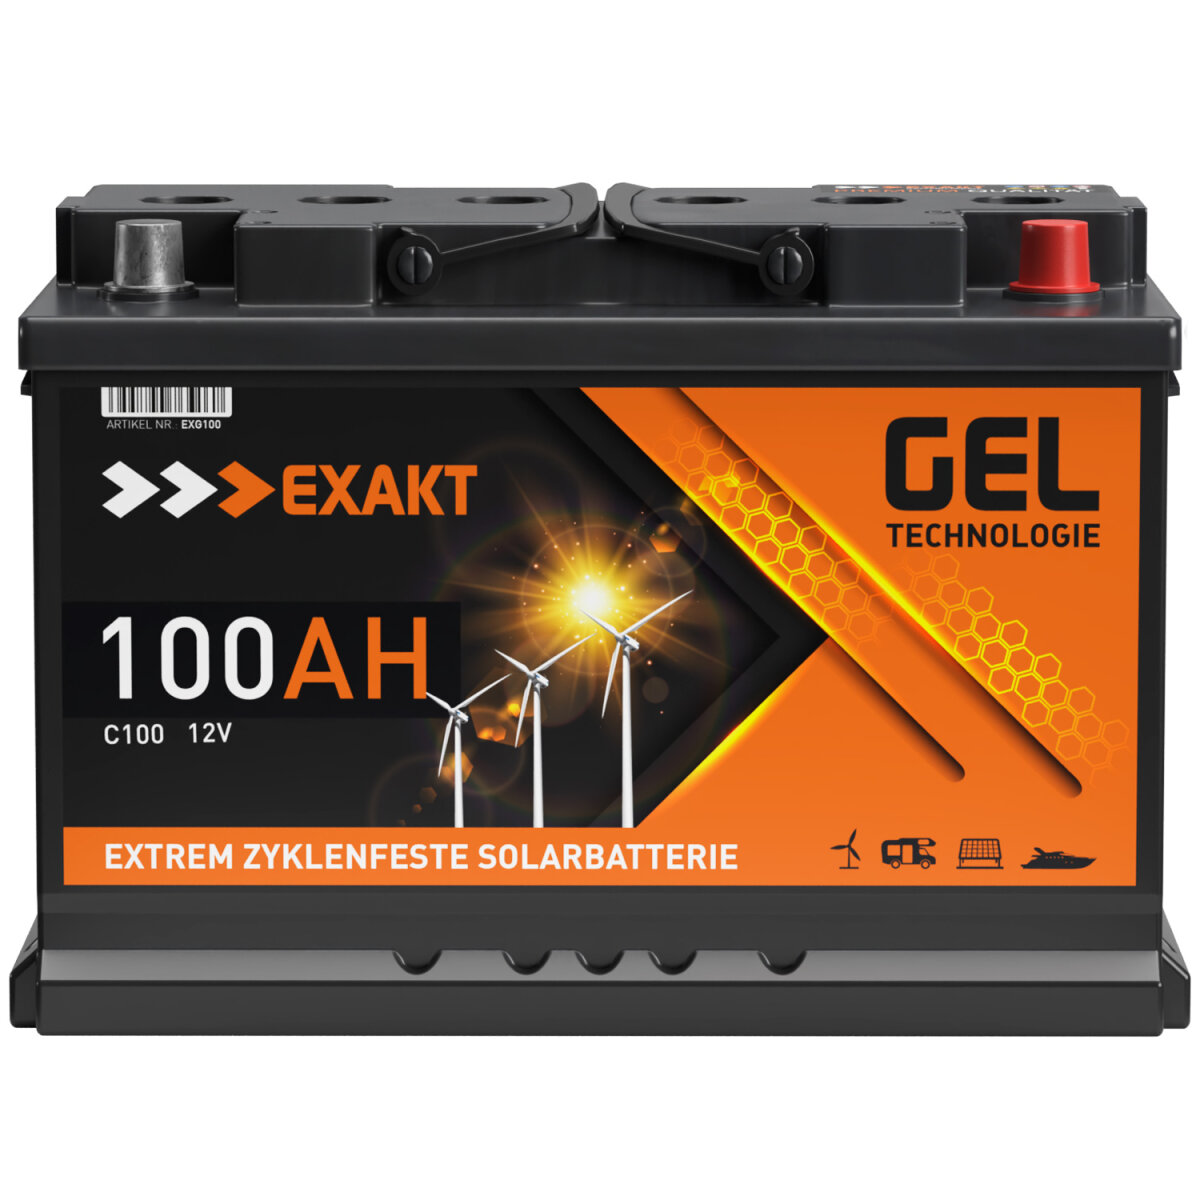 EXAKT GEL Solarbatterie 100Ah 12V, 138,57 €